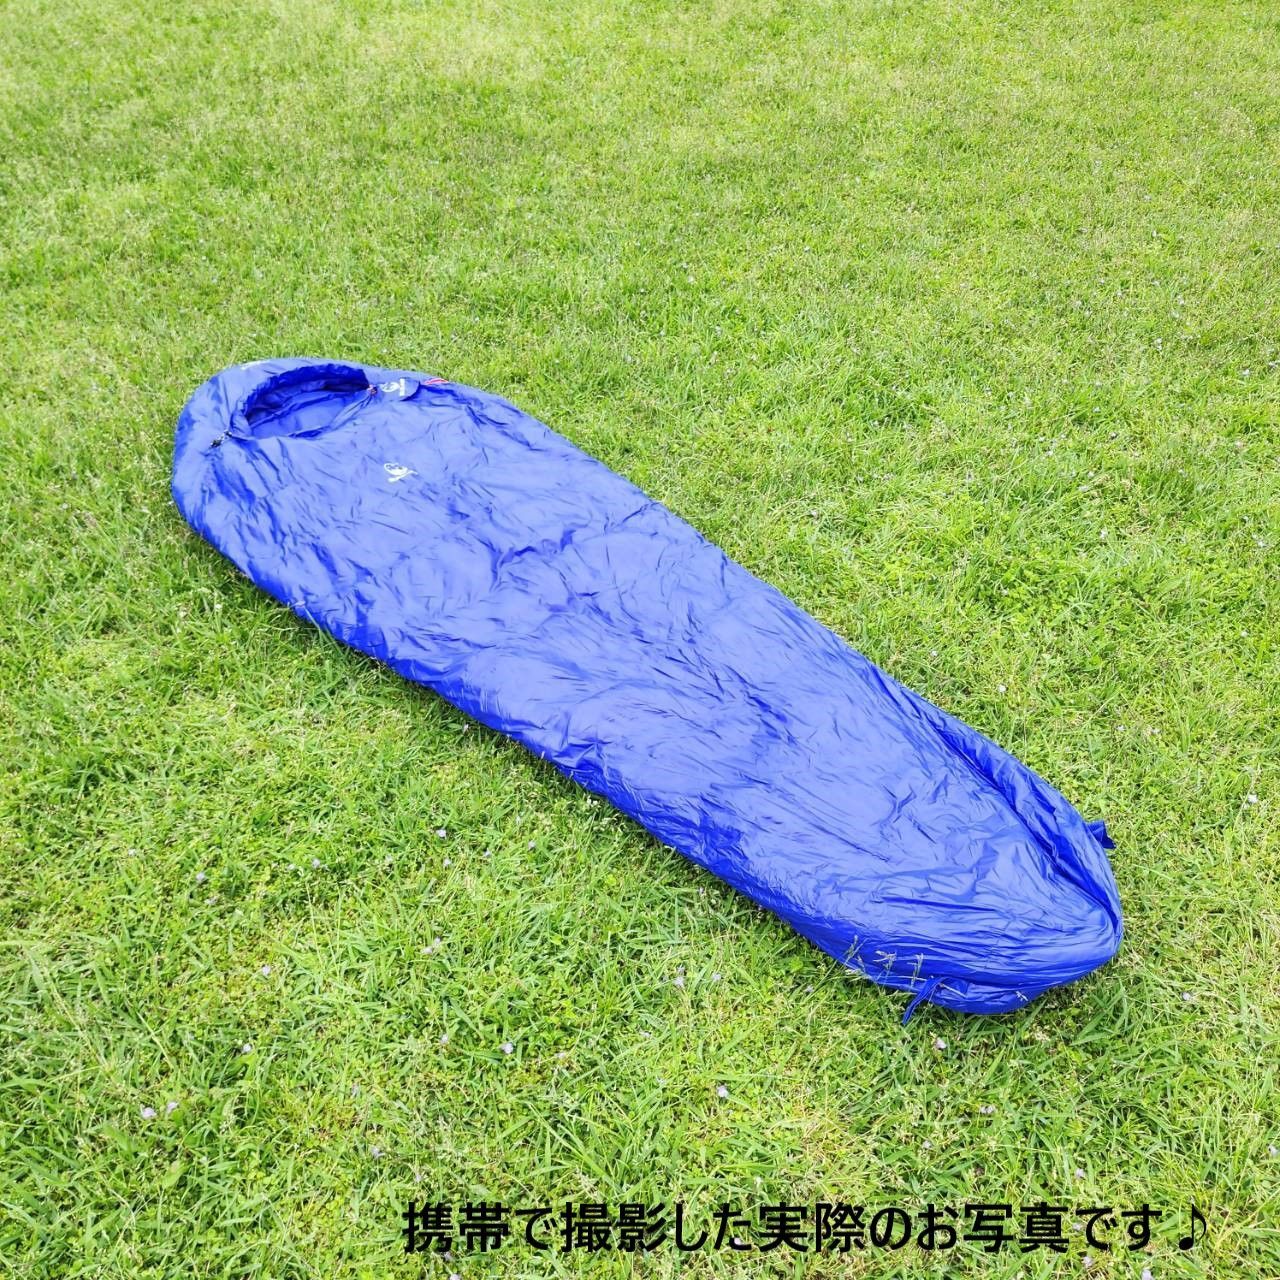 アウトドア 防水 グース ダウン マミー型 寝袋 シュラフ ブルー